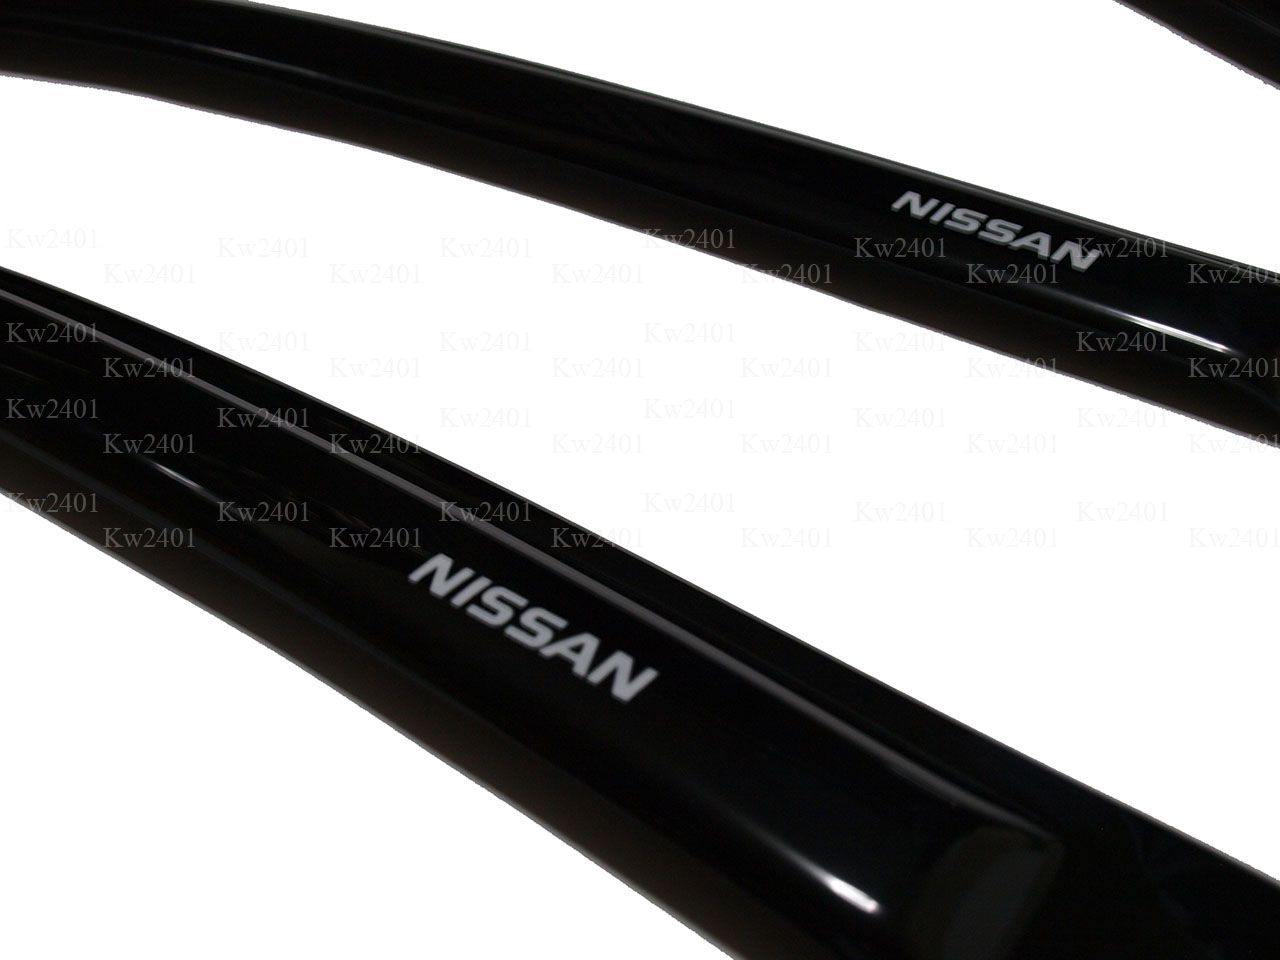 1998 Nissan sentra visors #5